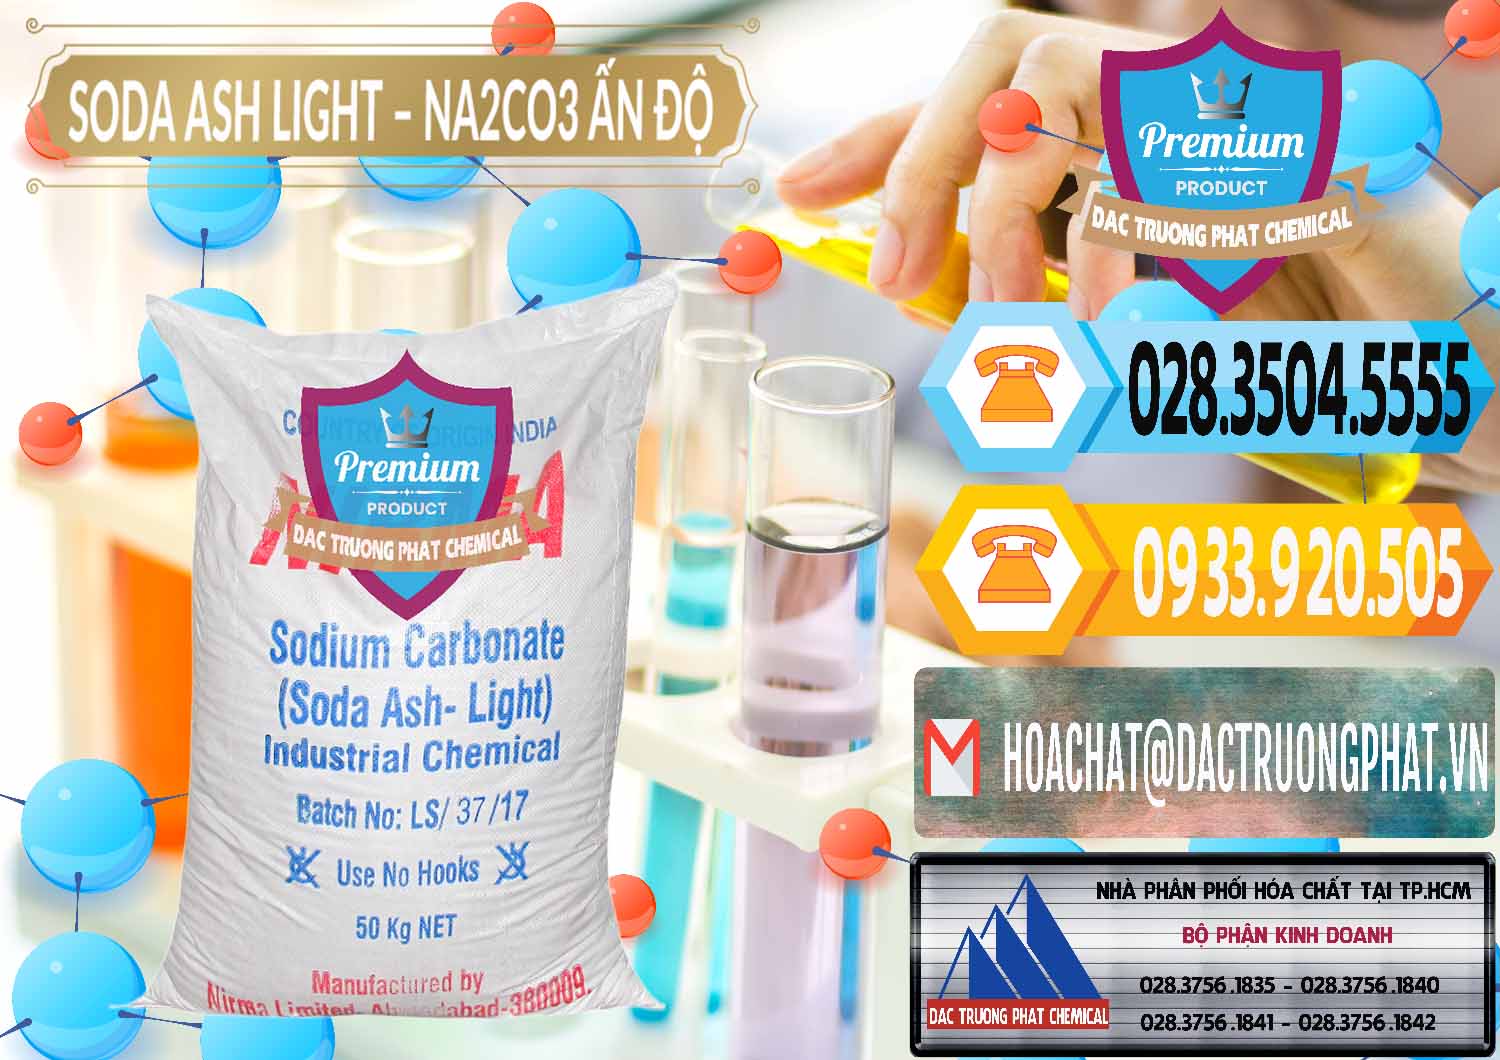 Công ty chuyên bán và phân phối Soda Ash Light - NA2CO3 Nirma Ấn Độ India - 0125 - Chuyên phân phối & cung cấp hóa chất tại TP.HCM - hoachattayrua.net